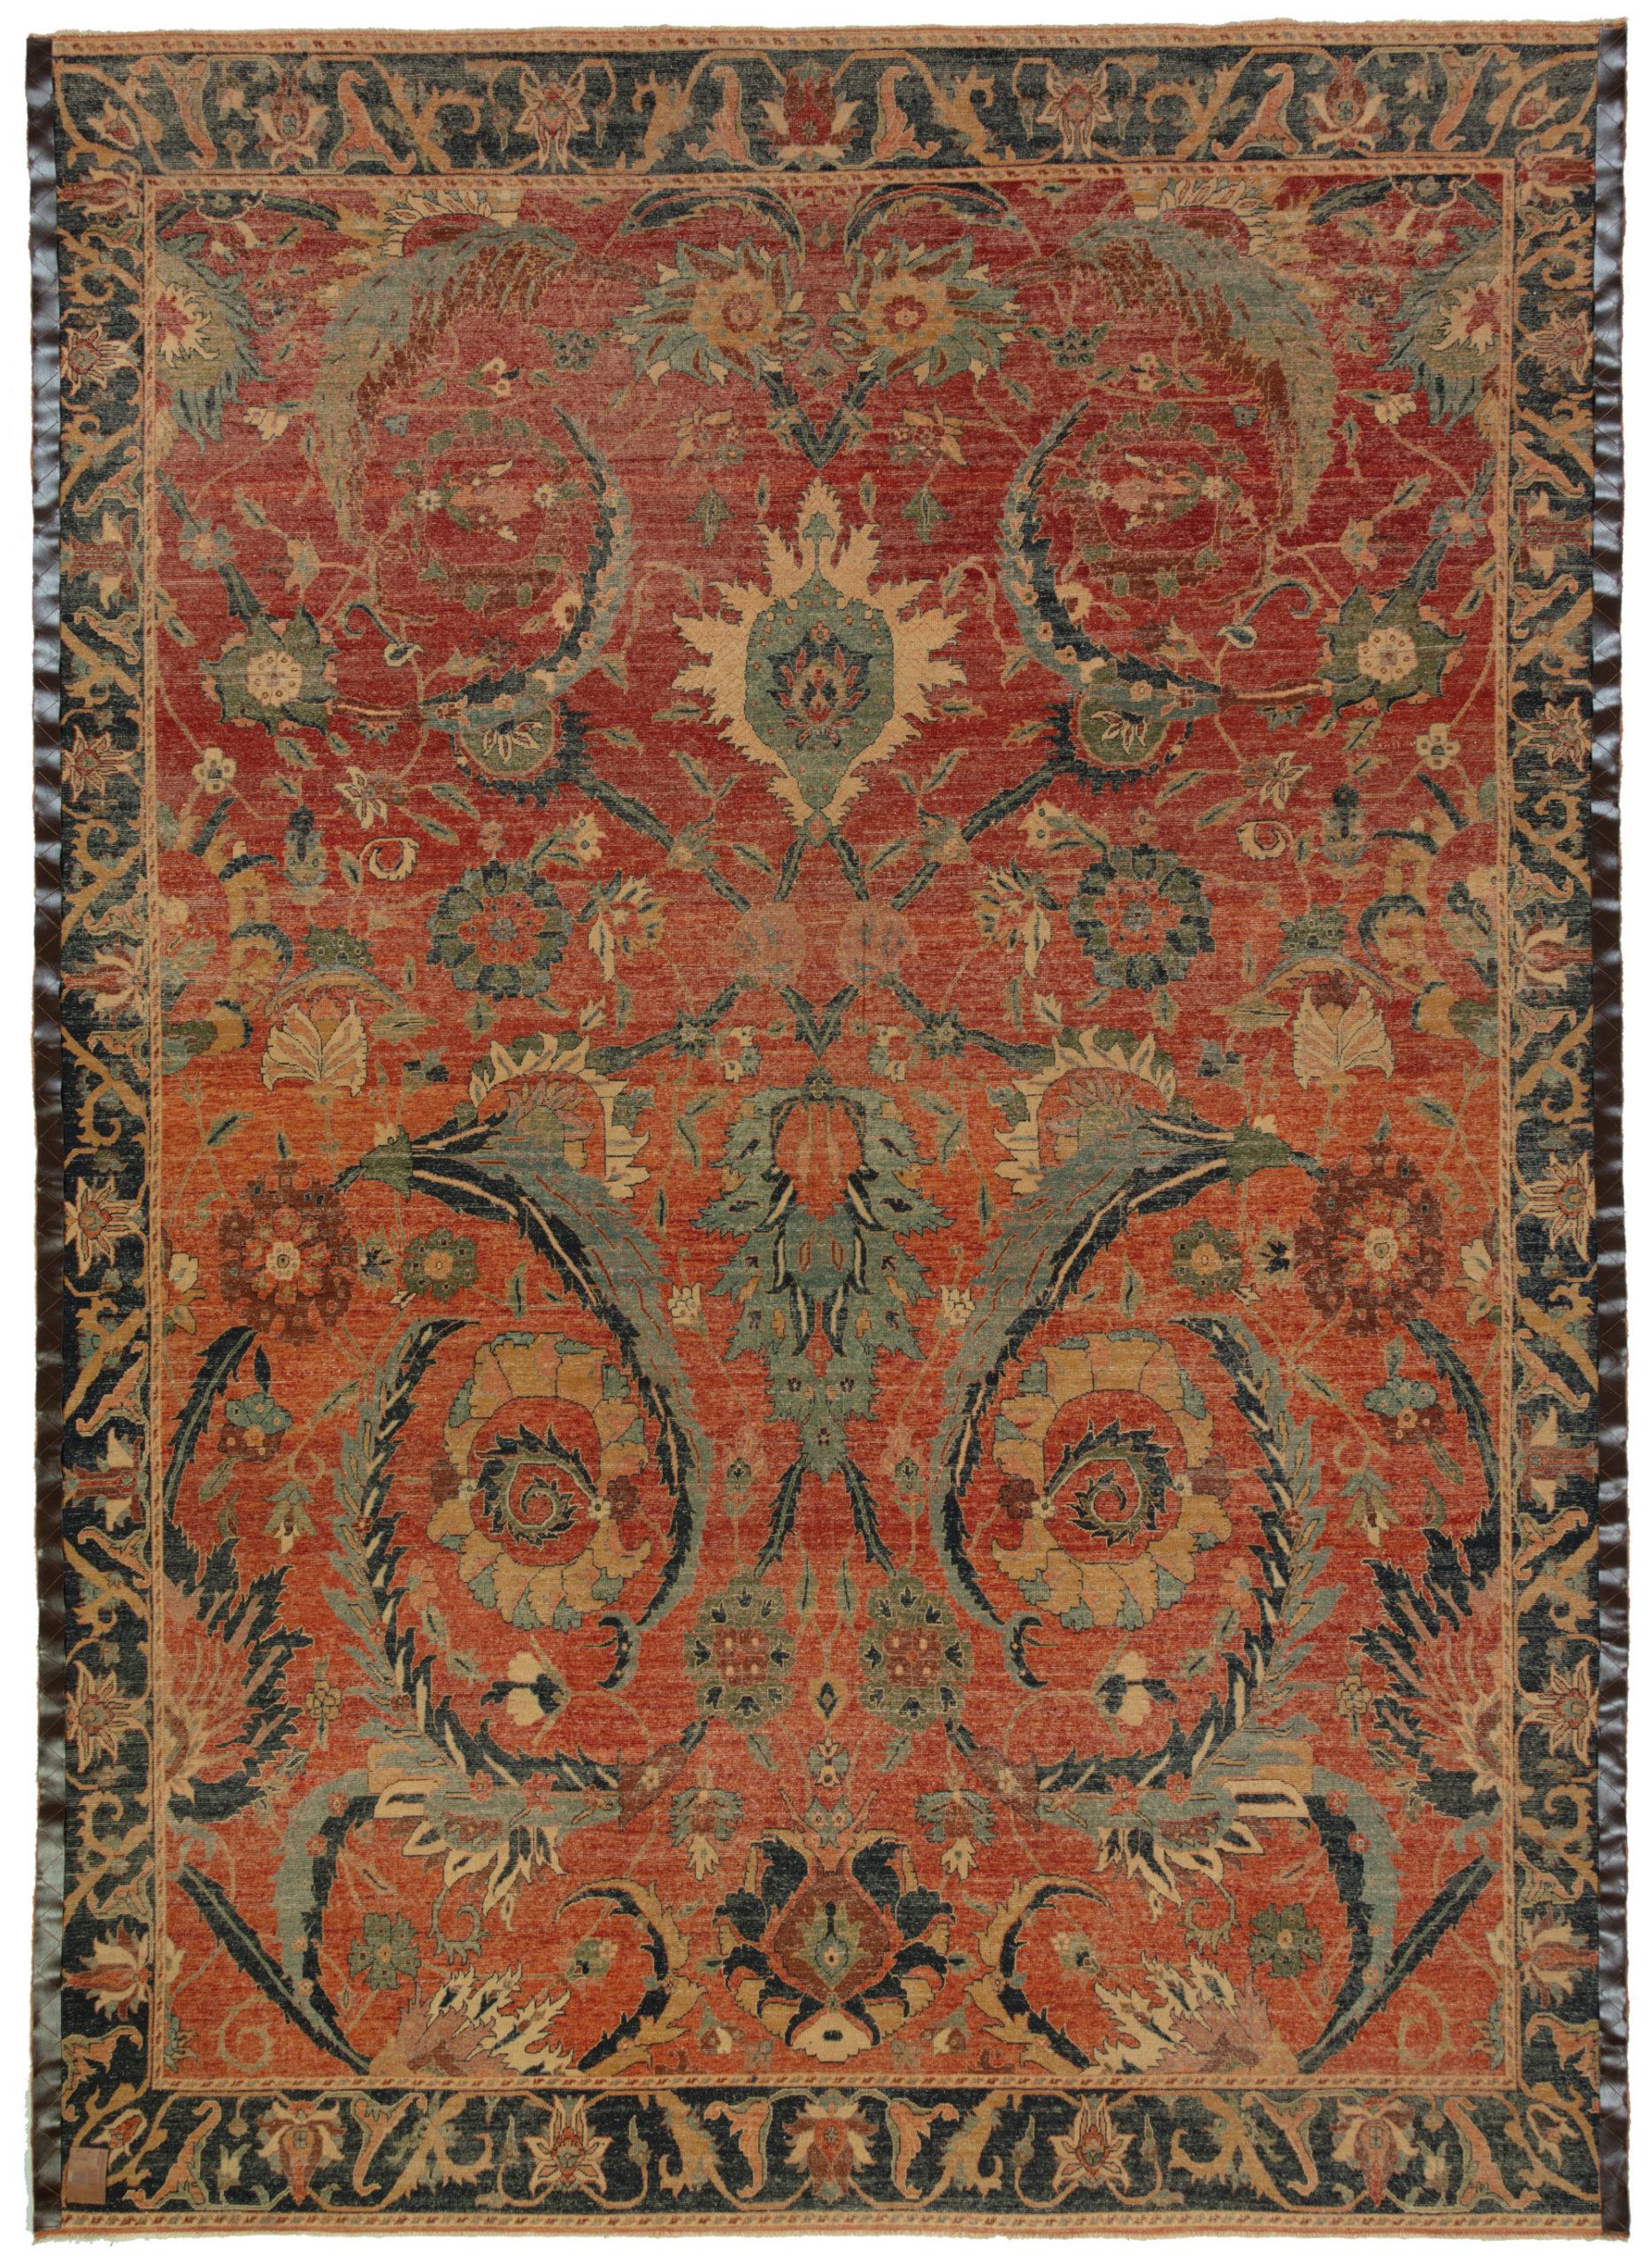 Die Designquelle des Teppichs stammt aus dem Buch Museo Calouste Gulbenkian, gedruckt vom Gulbenkian Museum Lissabon, 2015, Nr. 52. Dies ist ein vasentechnisches Teppichdesign aus dem 17. Jahrhundert in der Region Kerman in Persien. Im 16.